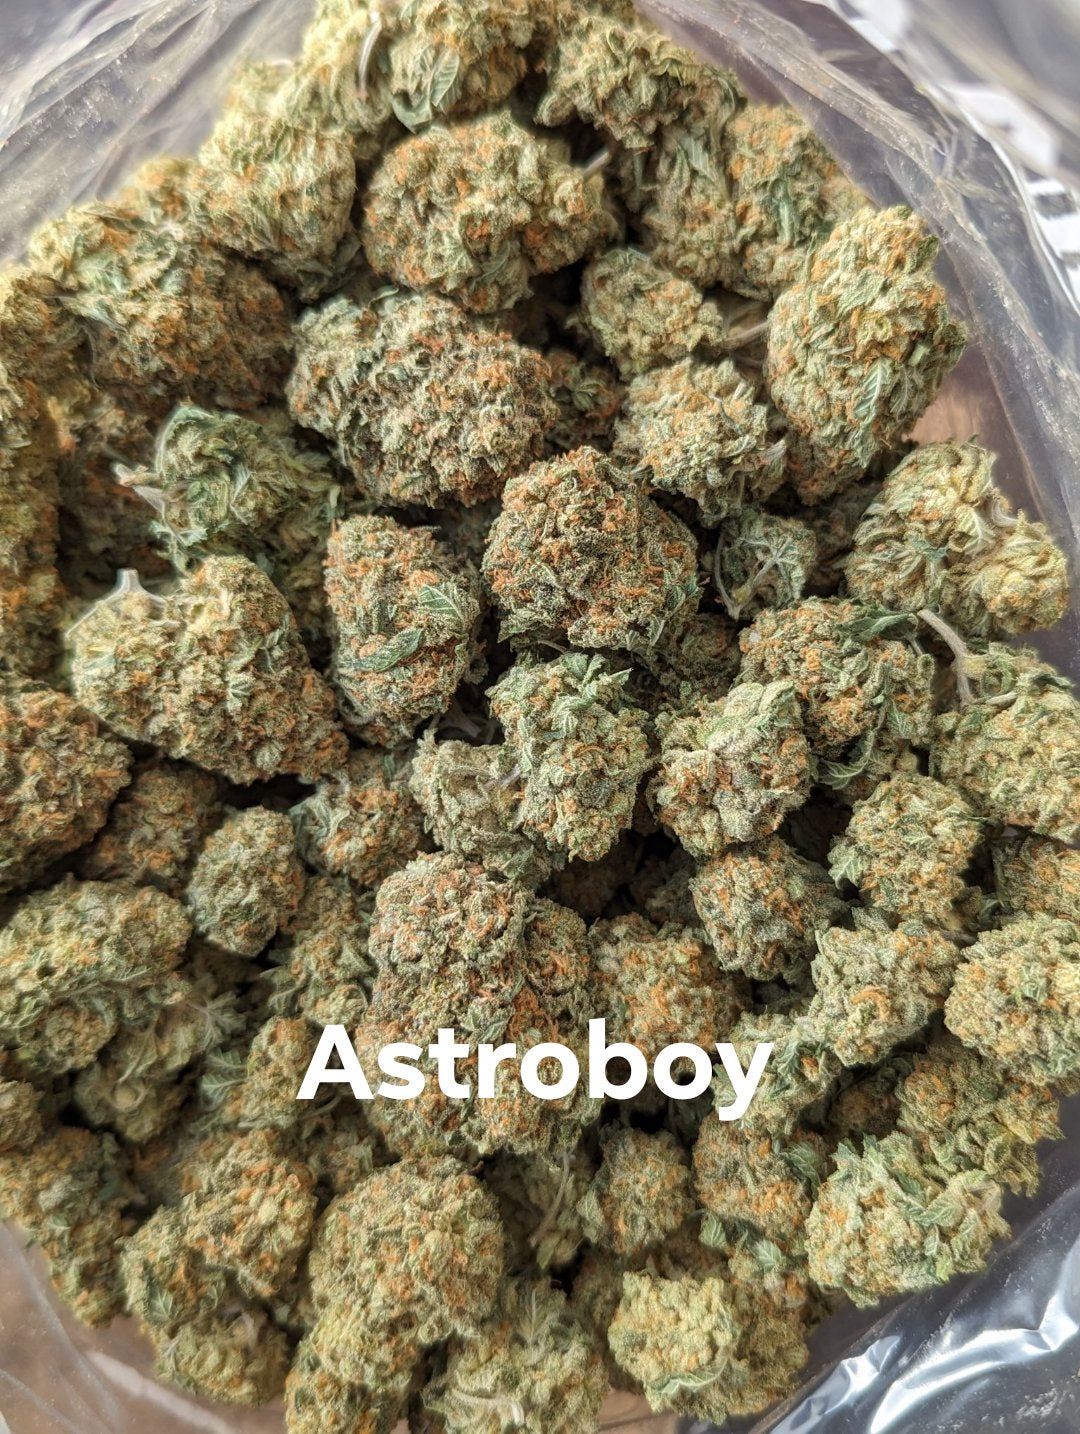 AAAA- Astroboy